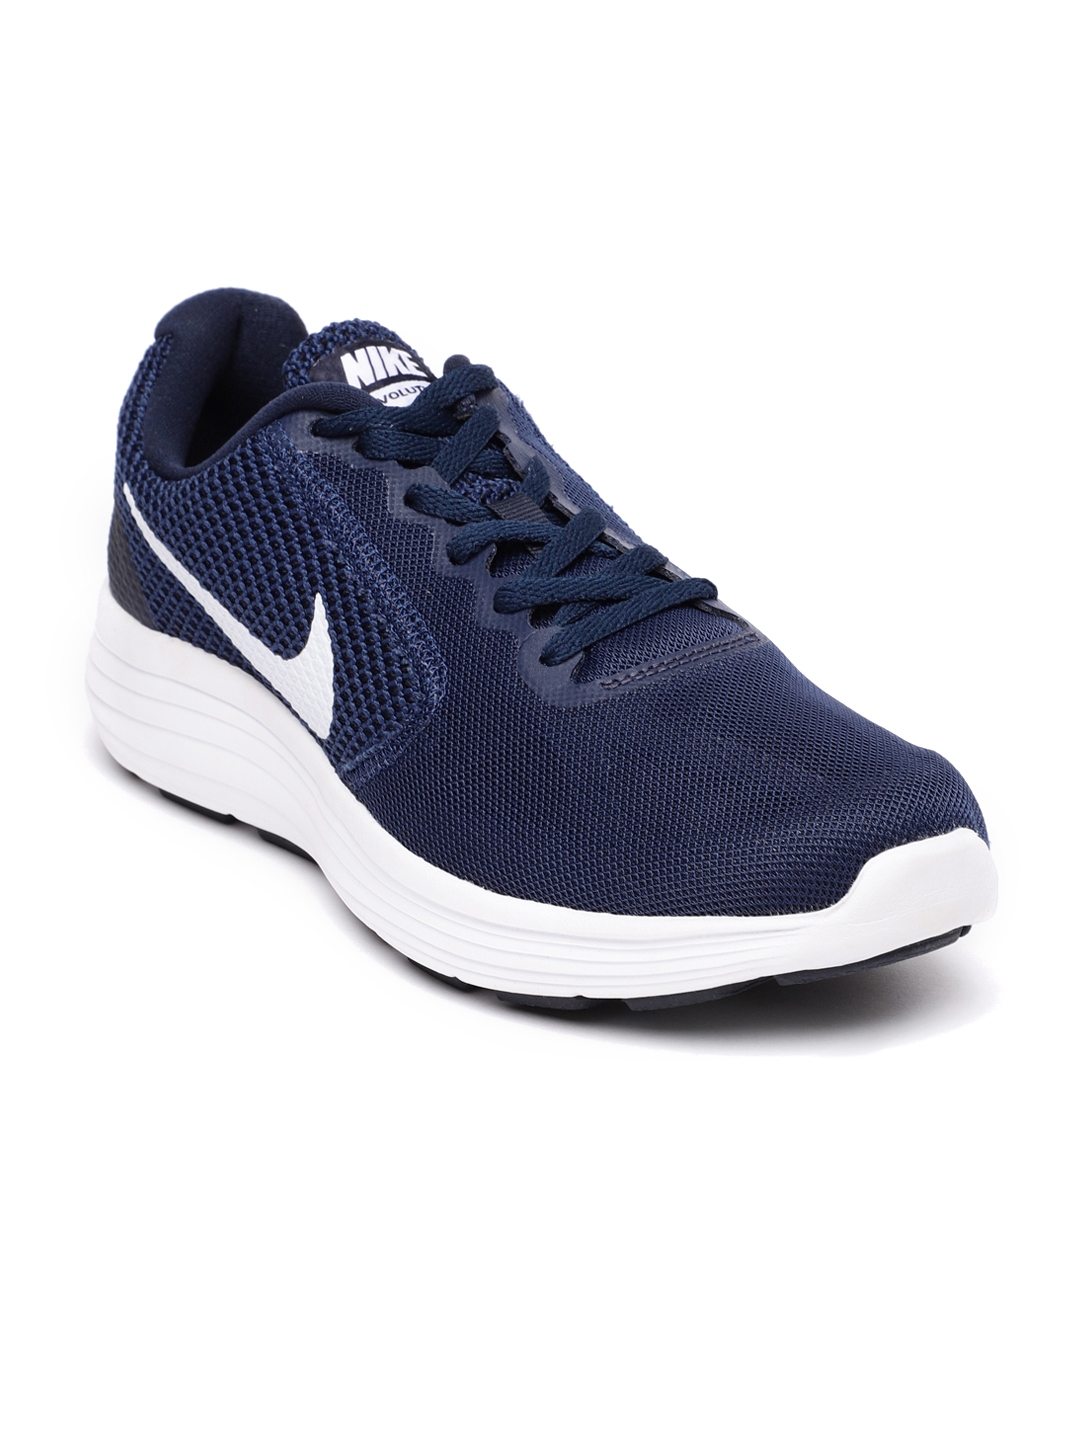 nike men's revolution 3 navy blue running shoes